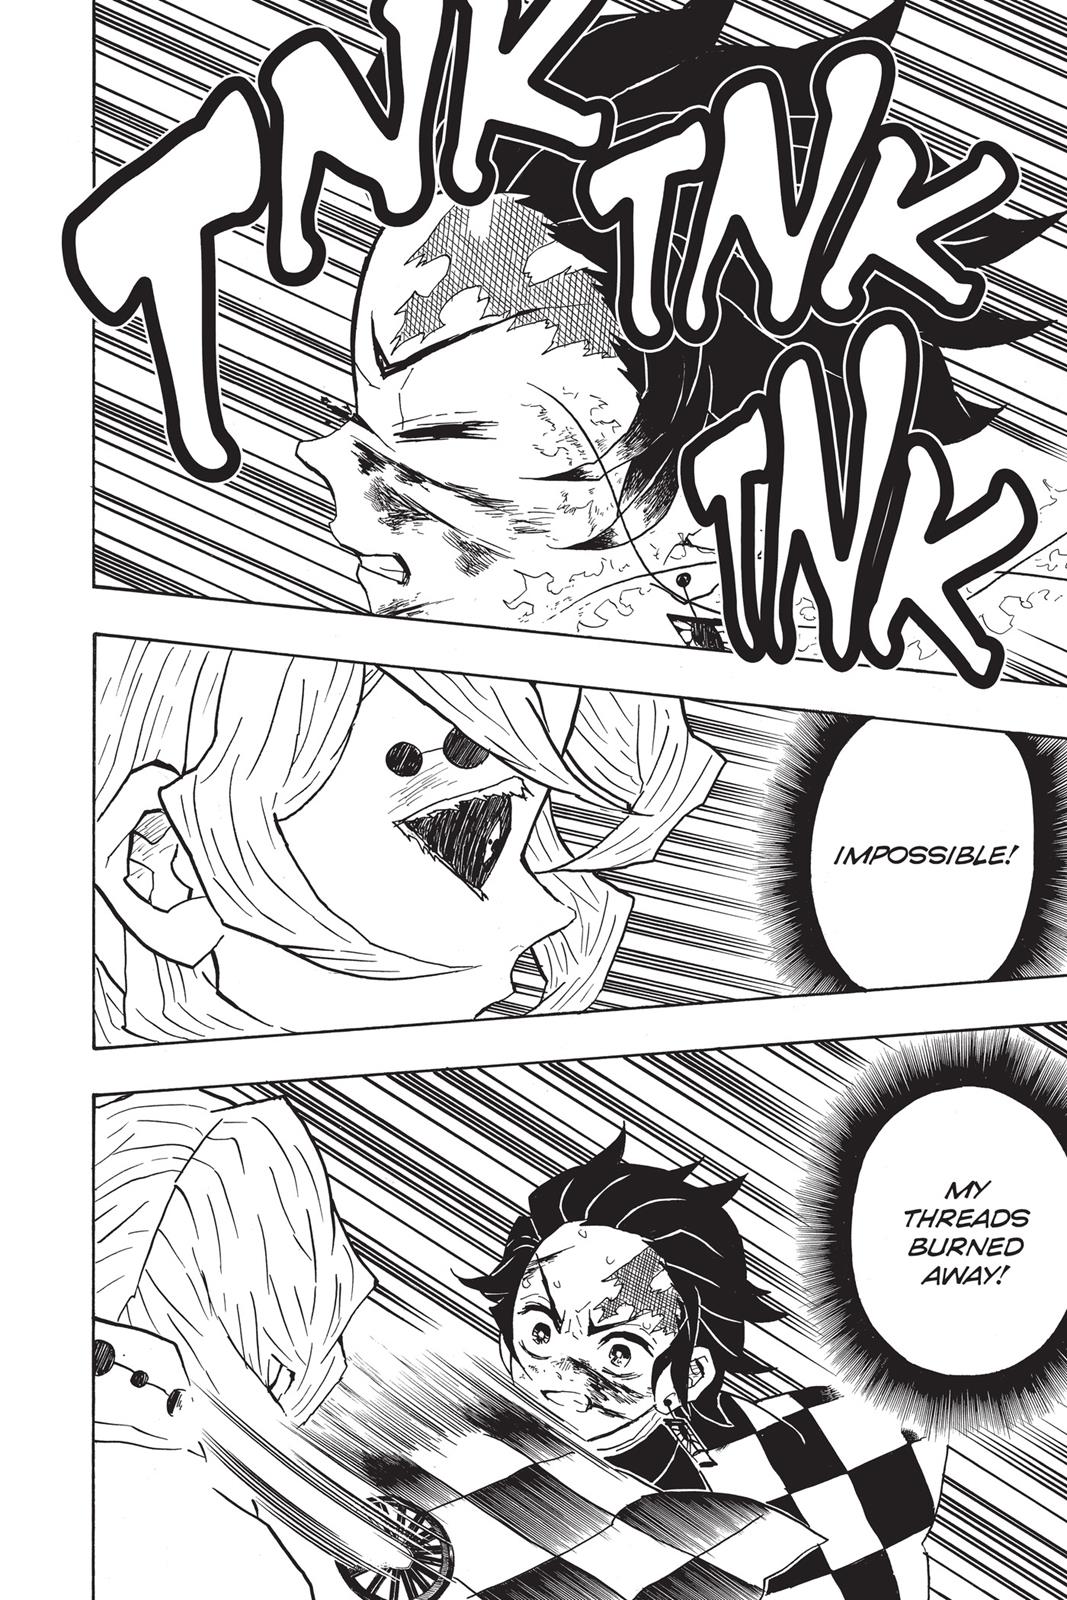 Demon Slayer Manga Manga Chapter - 40 - image 15